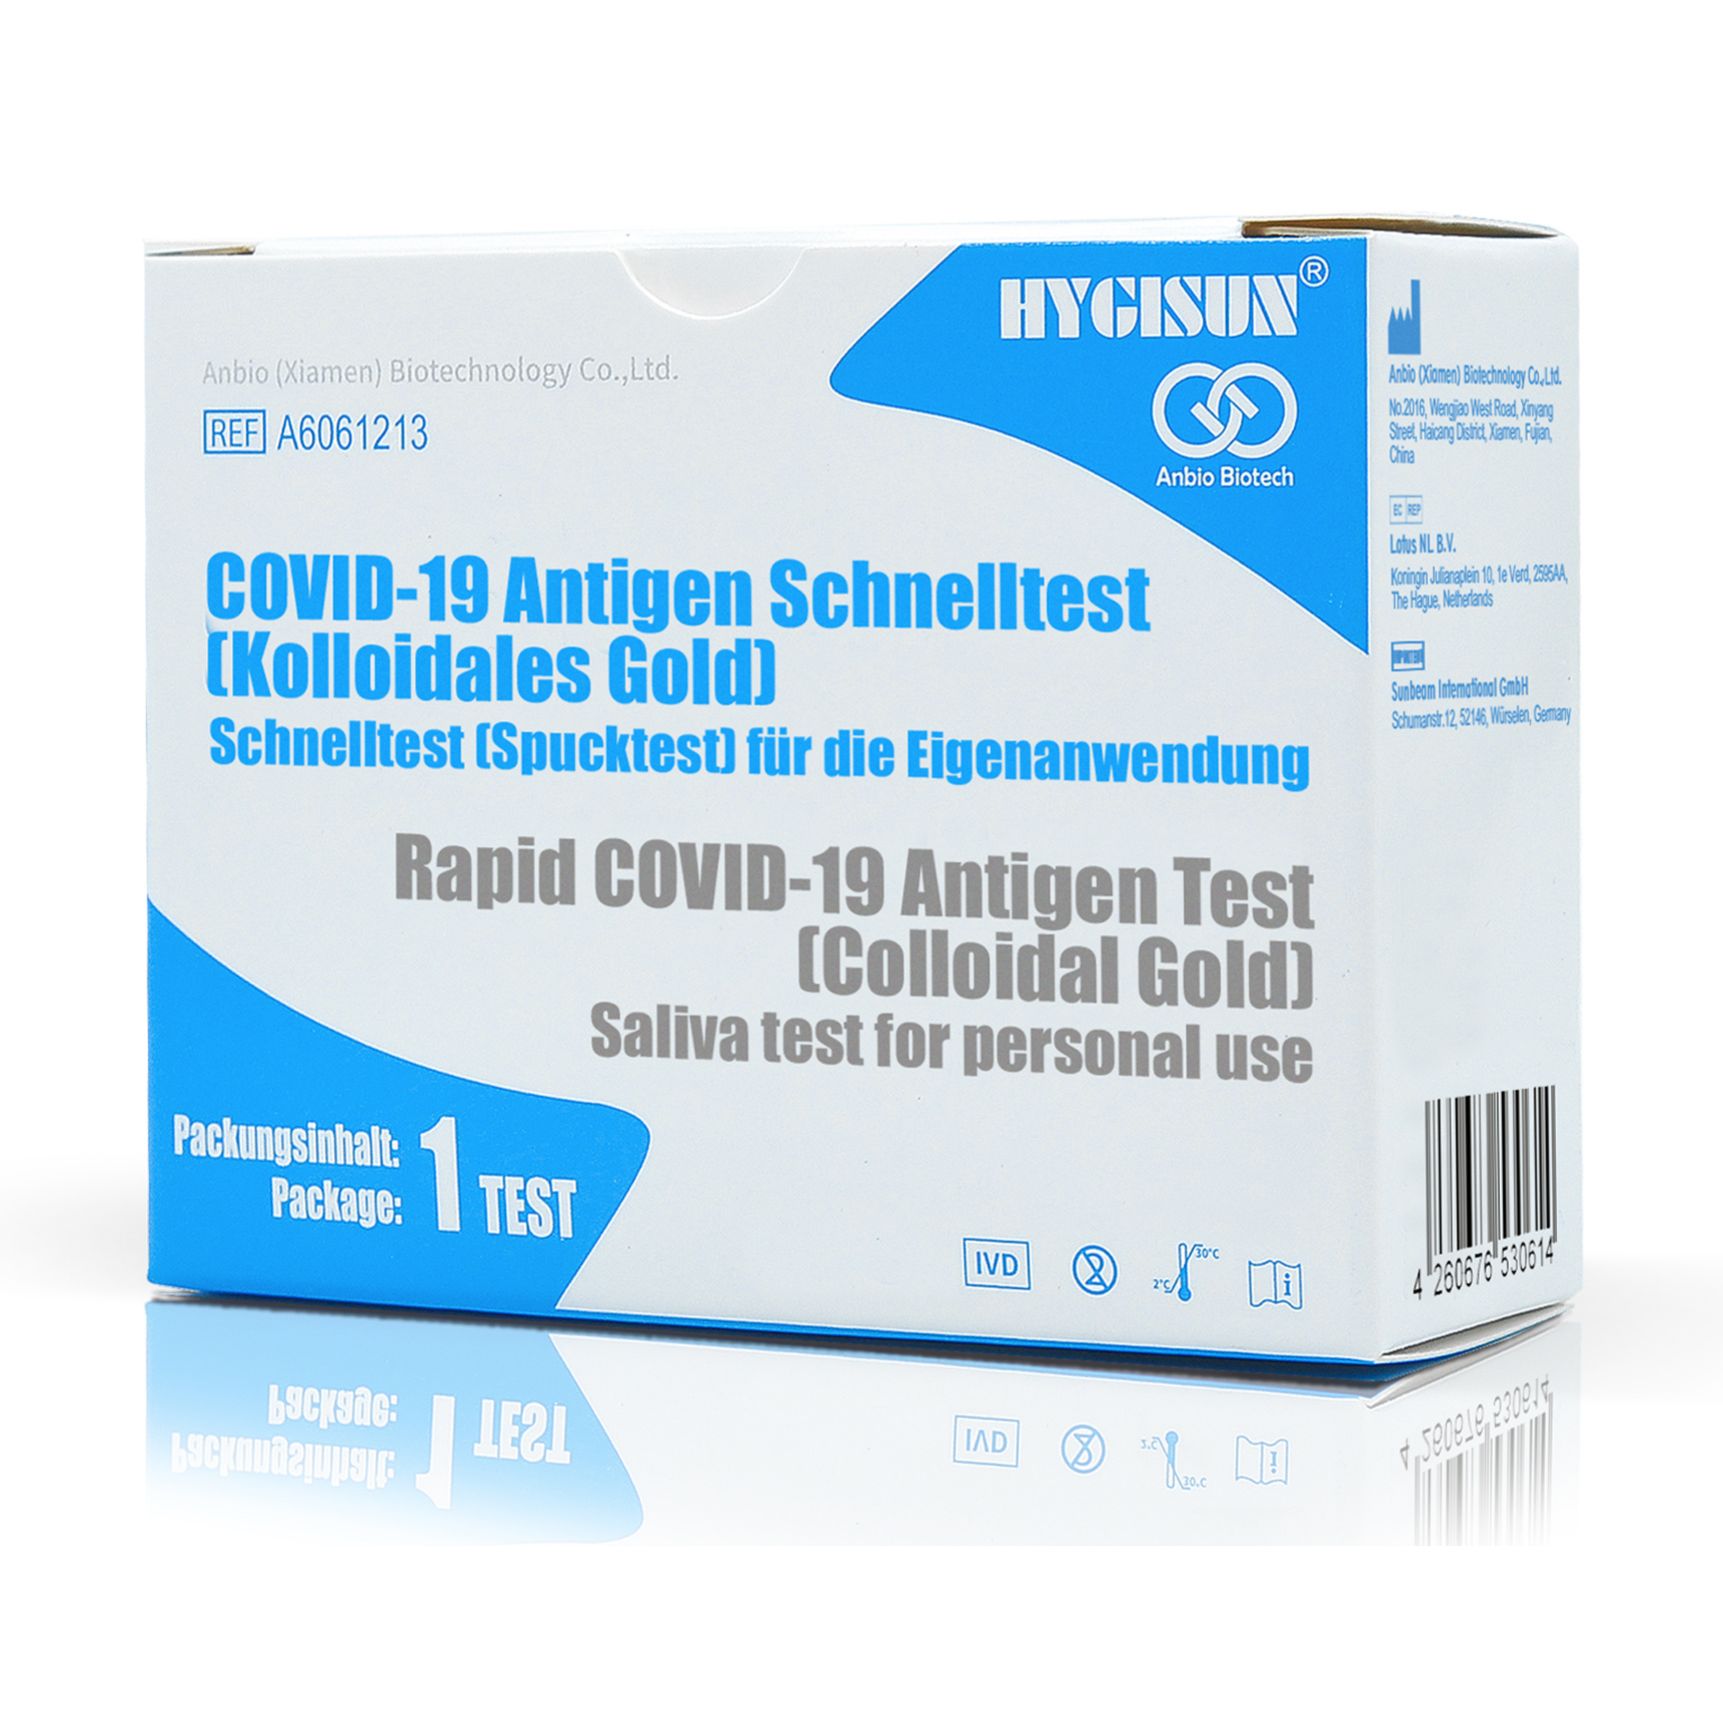 HYGISUN / Anbio Biotech Covid 19 Antigen-Schnelltest / Spucktest (Kolloidales Gold) (Laientest)